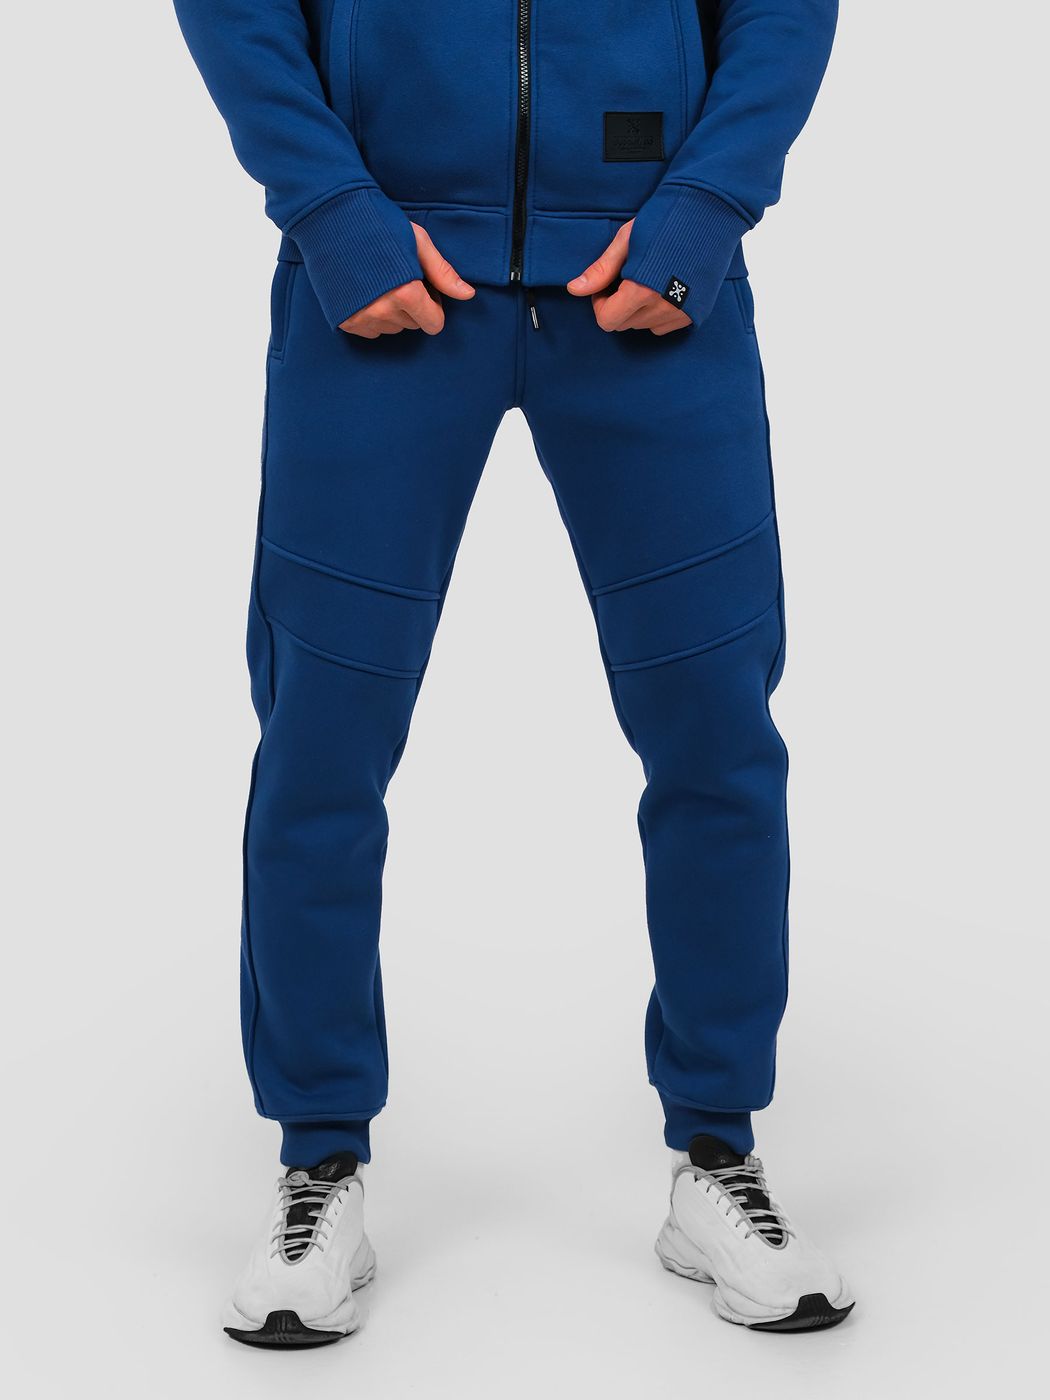 Men's tracksuit set Hoodie with a zipper and Pants Blue, Blue, M-L, L (108 cm)